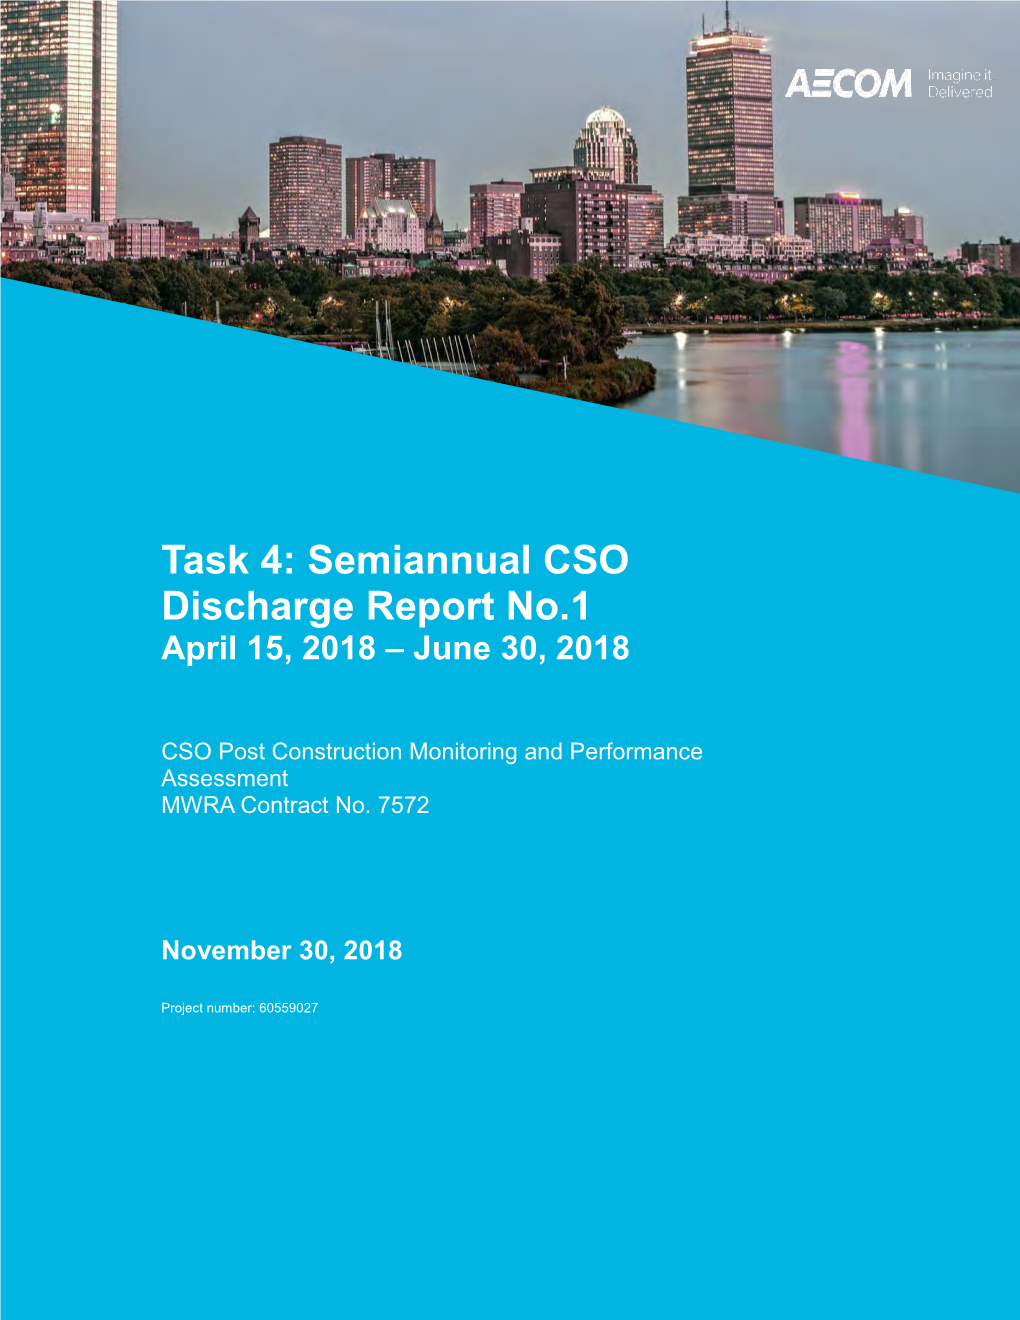 Task 4: Semiannual CSO Discharge Report No.1 April 15, 2018 – June 30, 2018